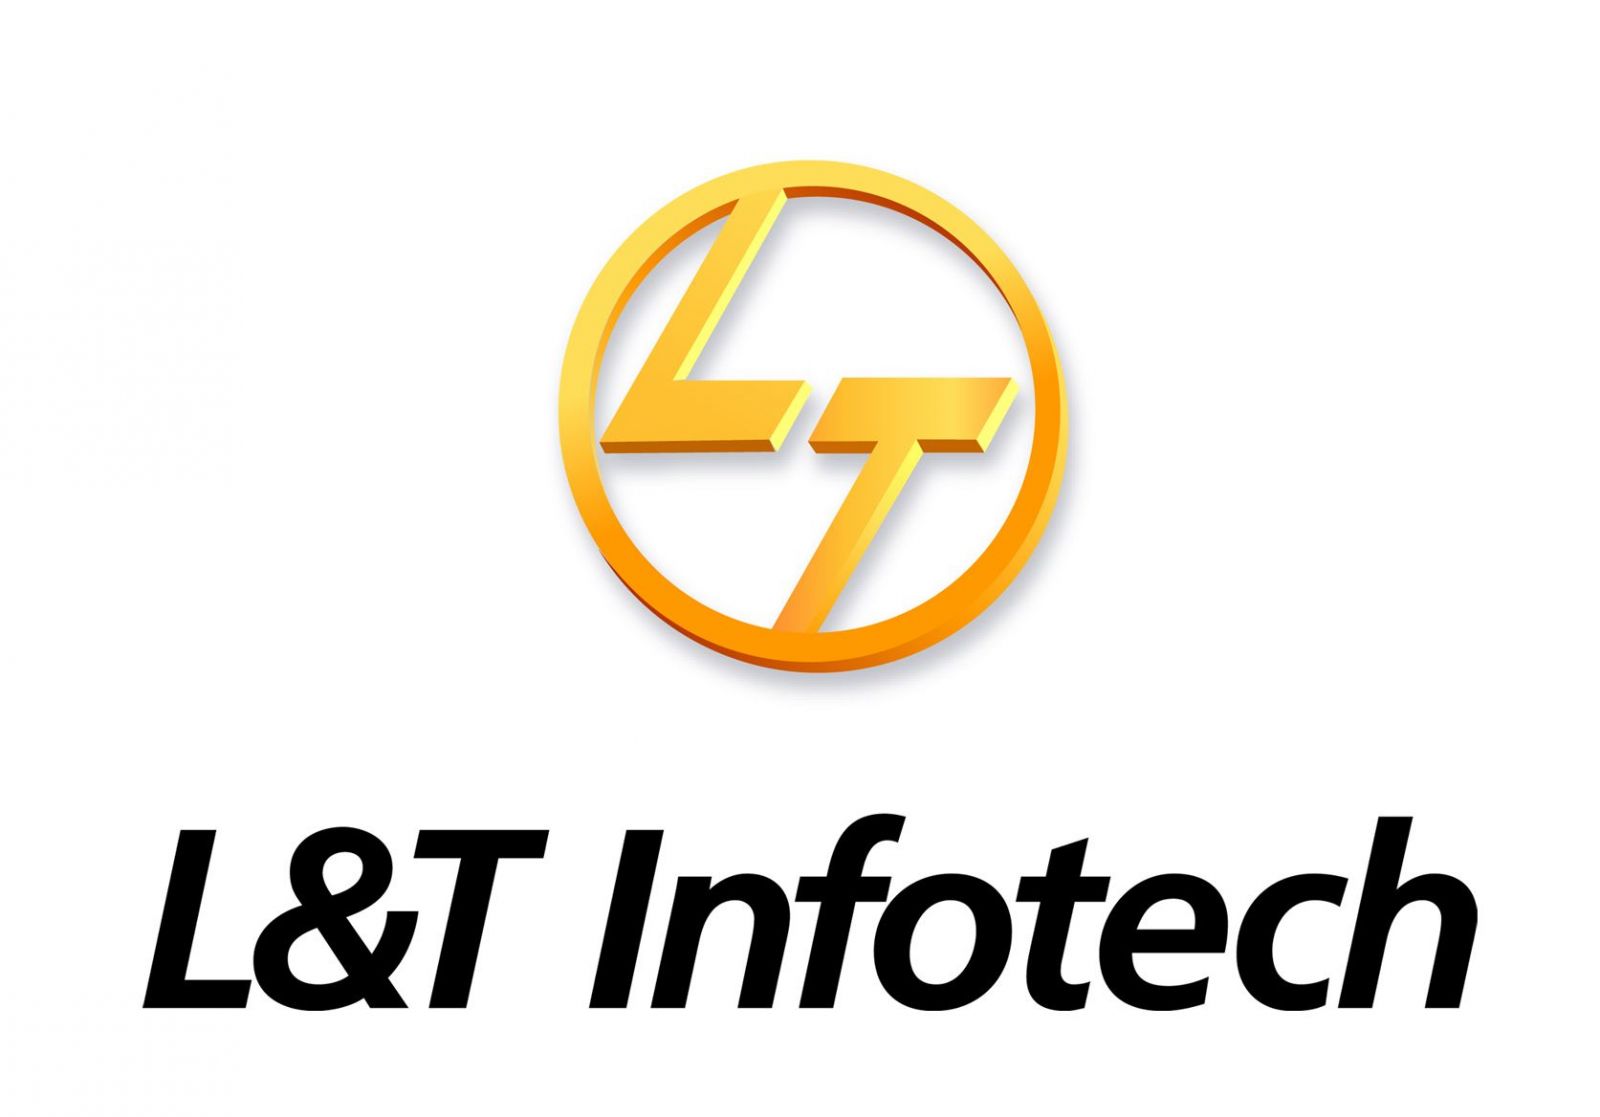 LT_Infotech_logo